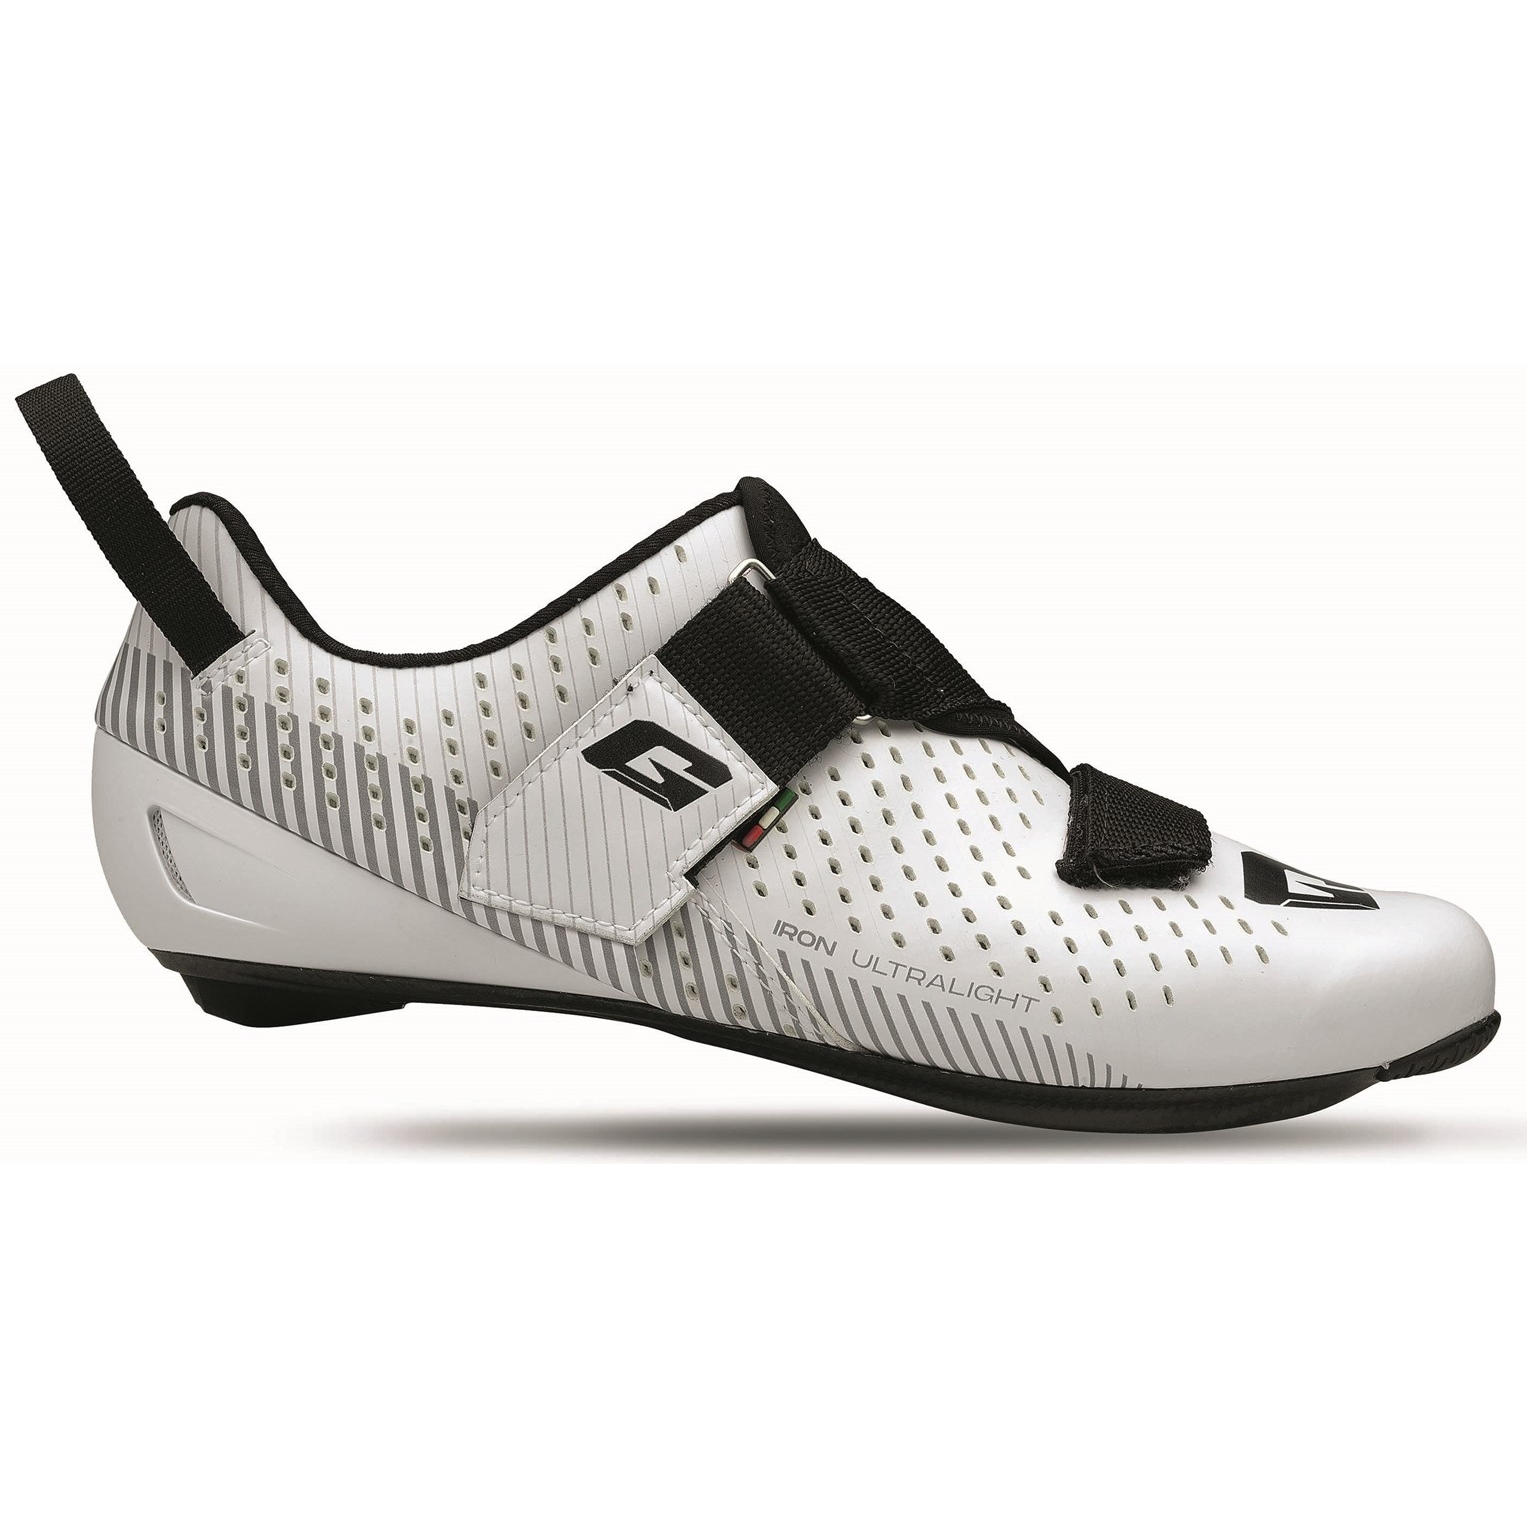 Produktbild von Gaerne Carbon G.Iron Triathlon Schuhe - Weiß